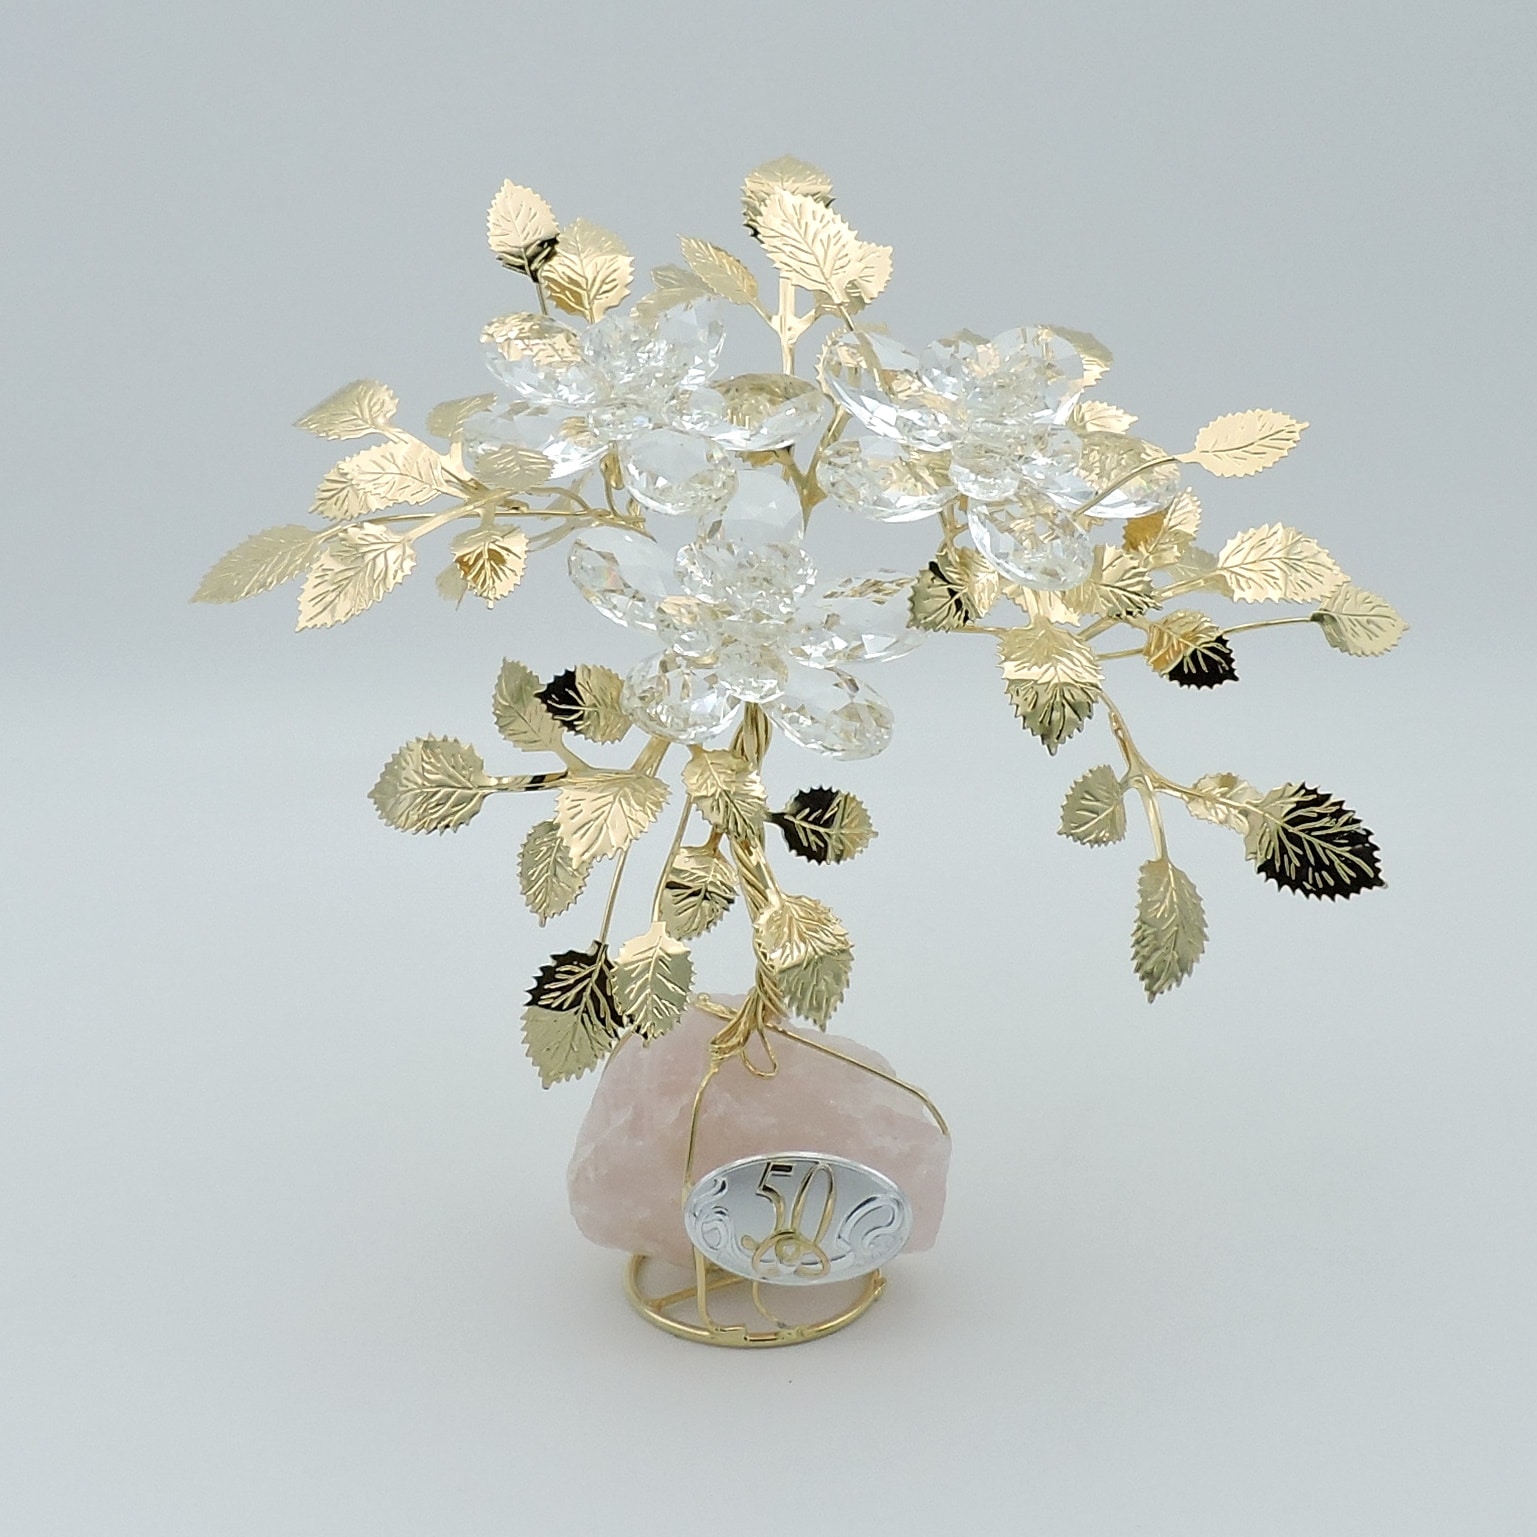 Fiori in cristallo per regalo nozze d'oro realizzati a mano